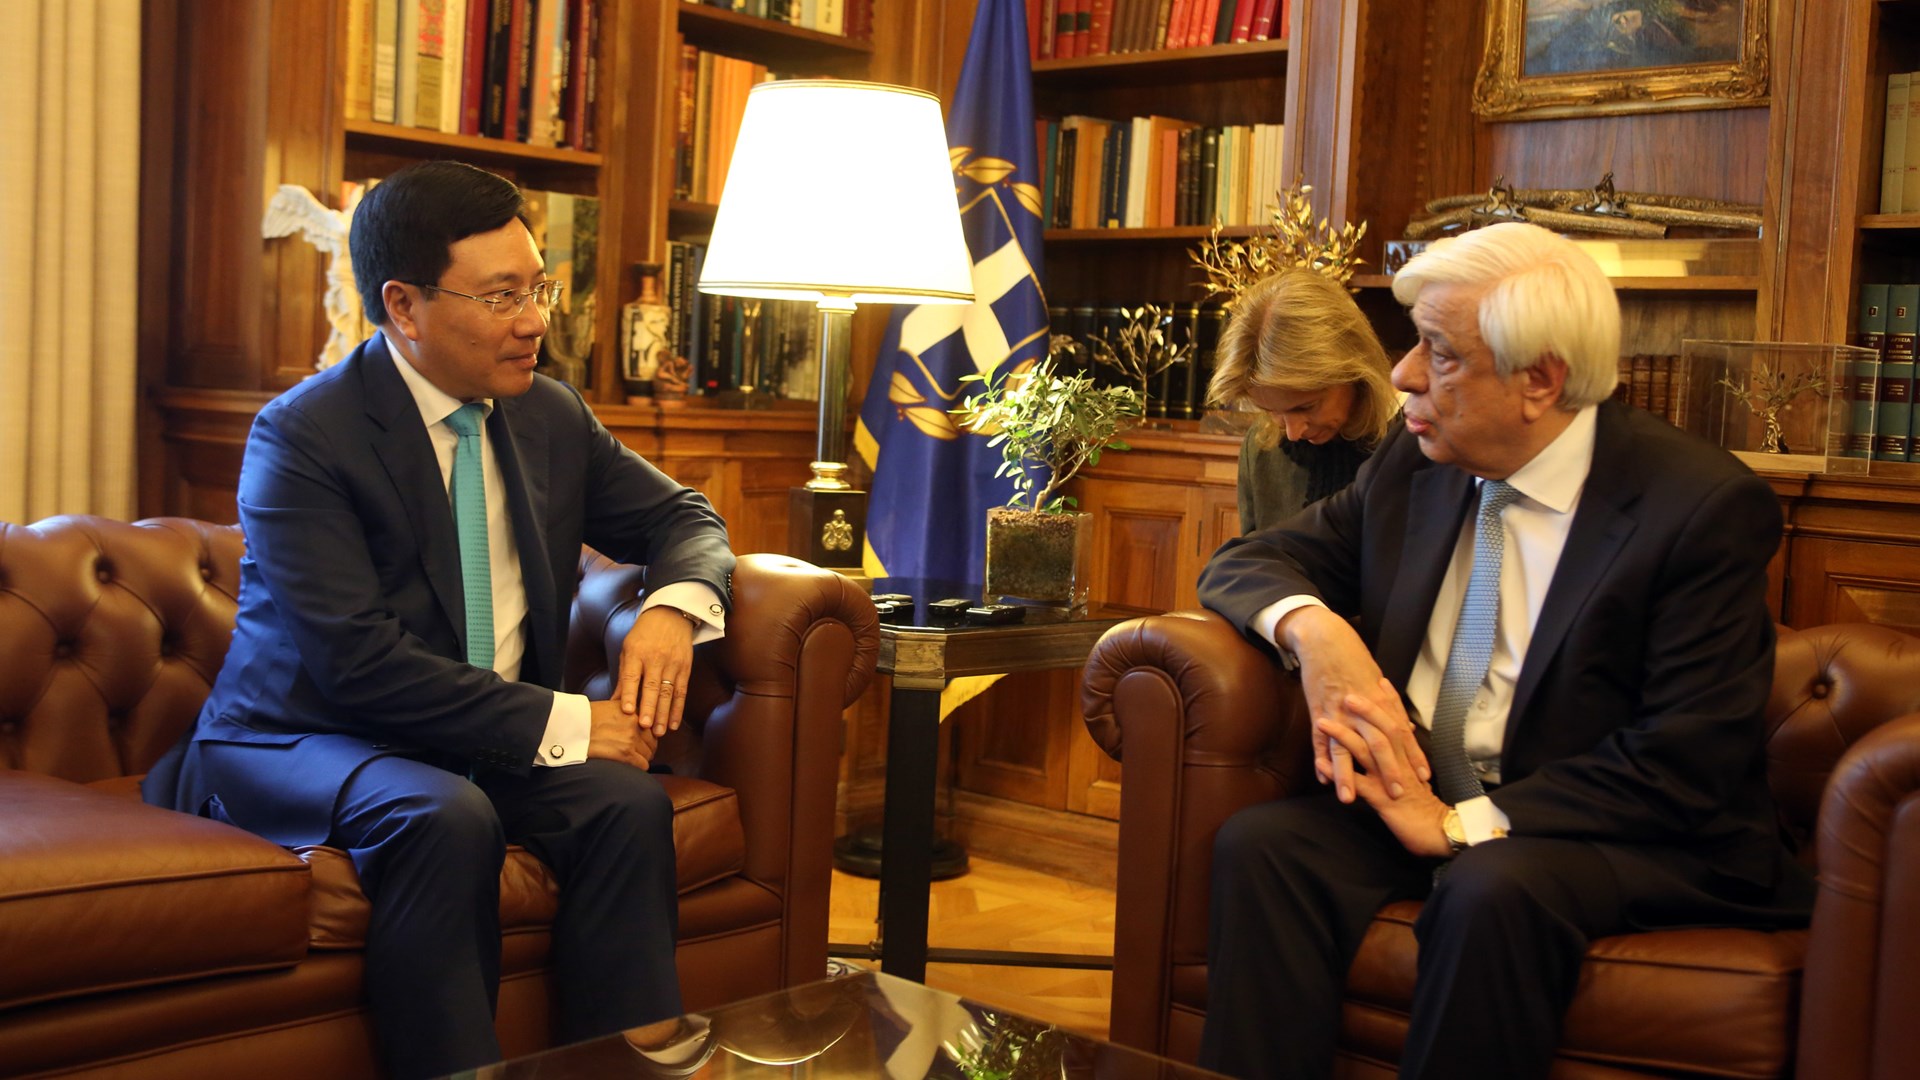 Παυλόπουλος: Η Ελλάδα στοχεύει στην περαιτέρω συνεργασία με το Βιετνάμ- Κοινός άξονας η εφαρμογή του διεθνούς δικαίου στο σύνολό του